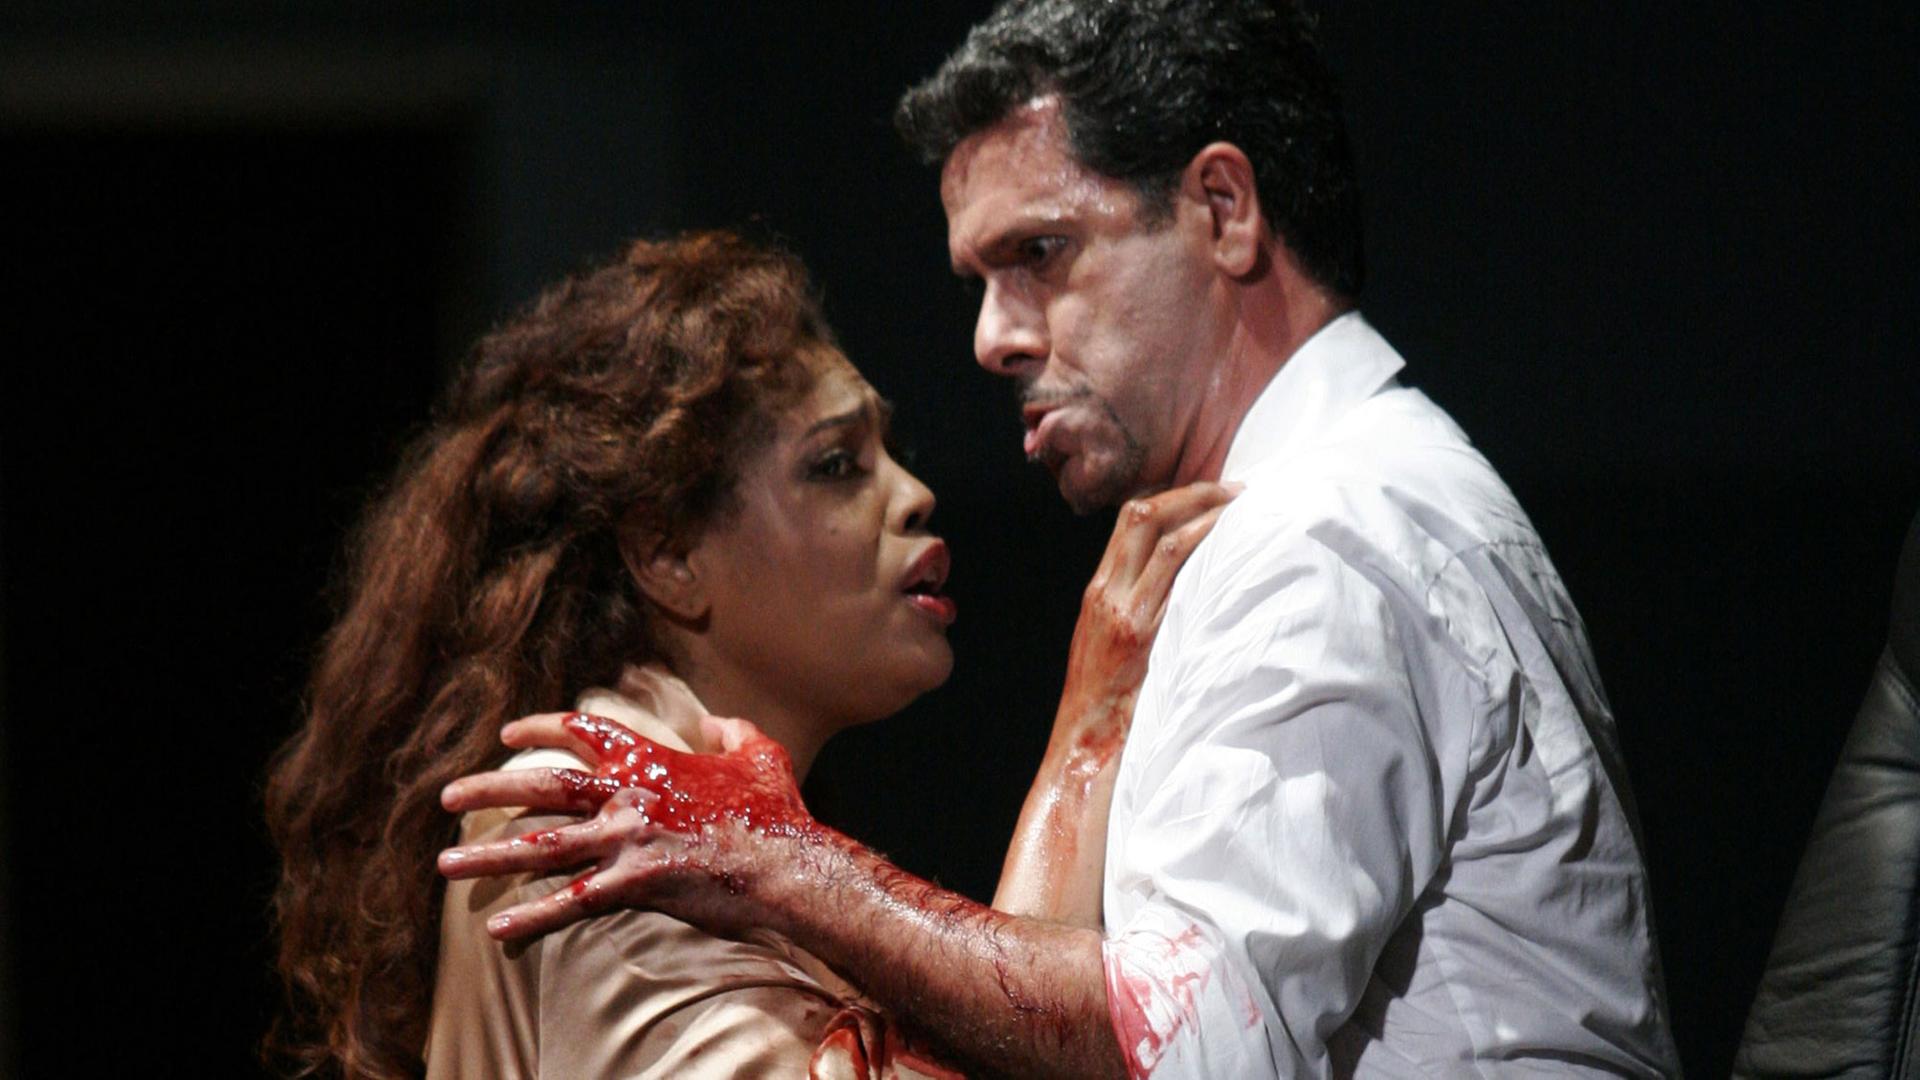 Marquita Lister als Lady Macbeth und Lucio Gallo als Macbeth in einer Szene der gleichnamigen Oper von Giuseppe Verdi, die in der Inszenierung von Philipp Himmelmann am 3.10.2005 an der Semperoper Dresden Premiere hatte (Foto von der Probe am 29.09.2005).